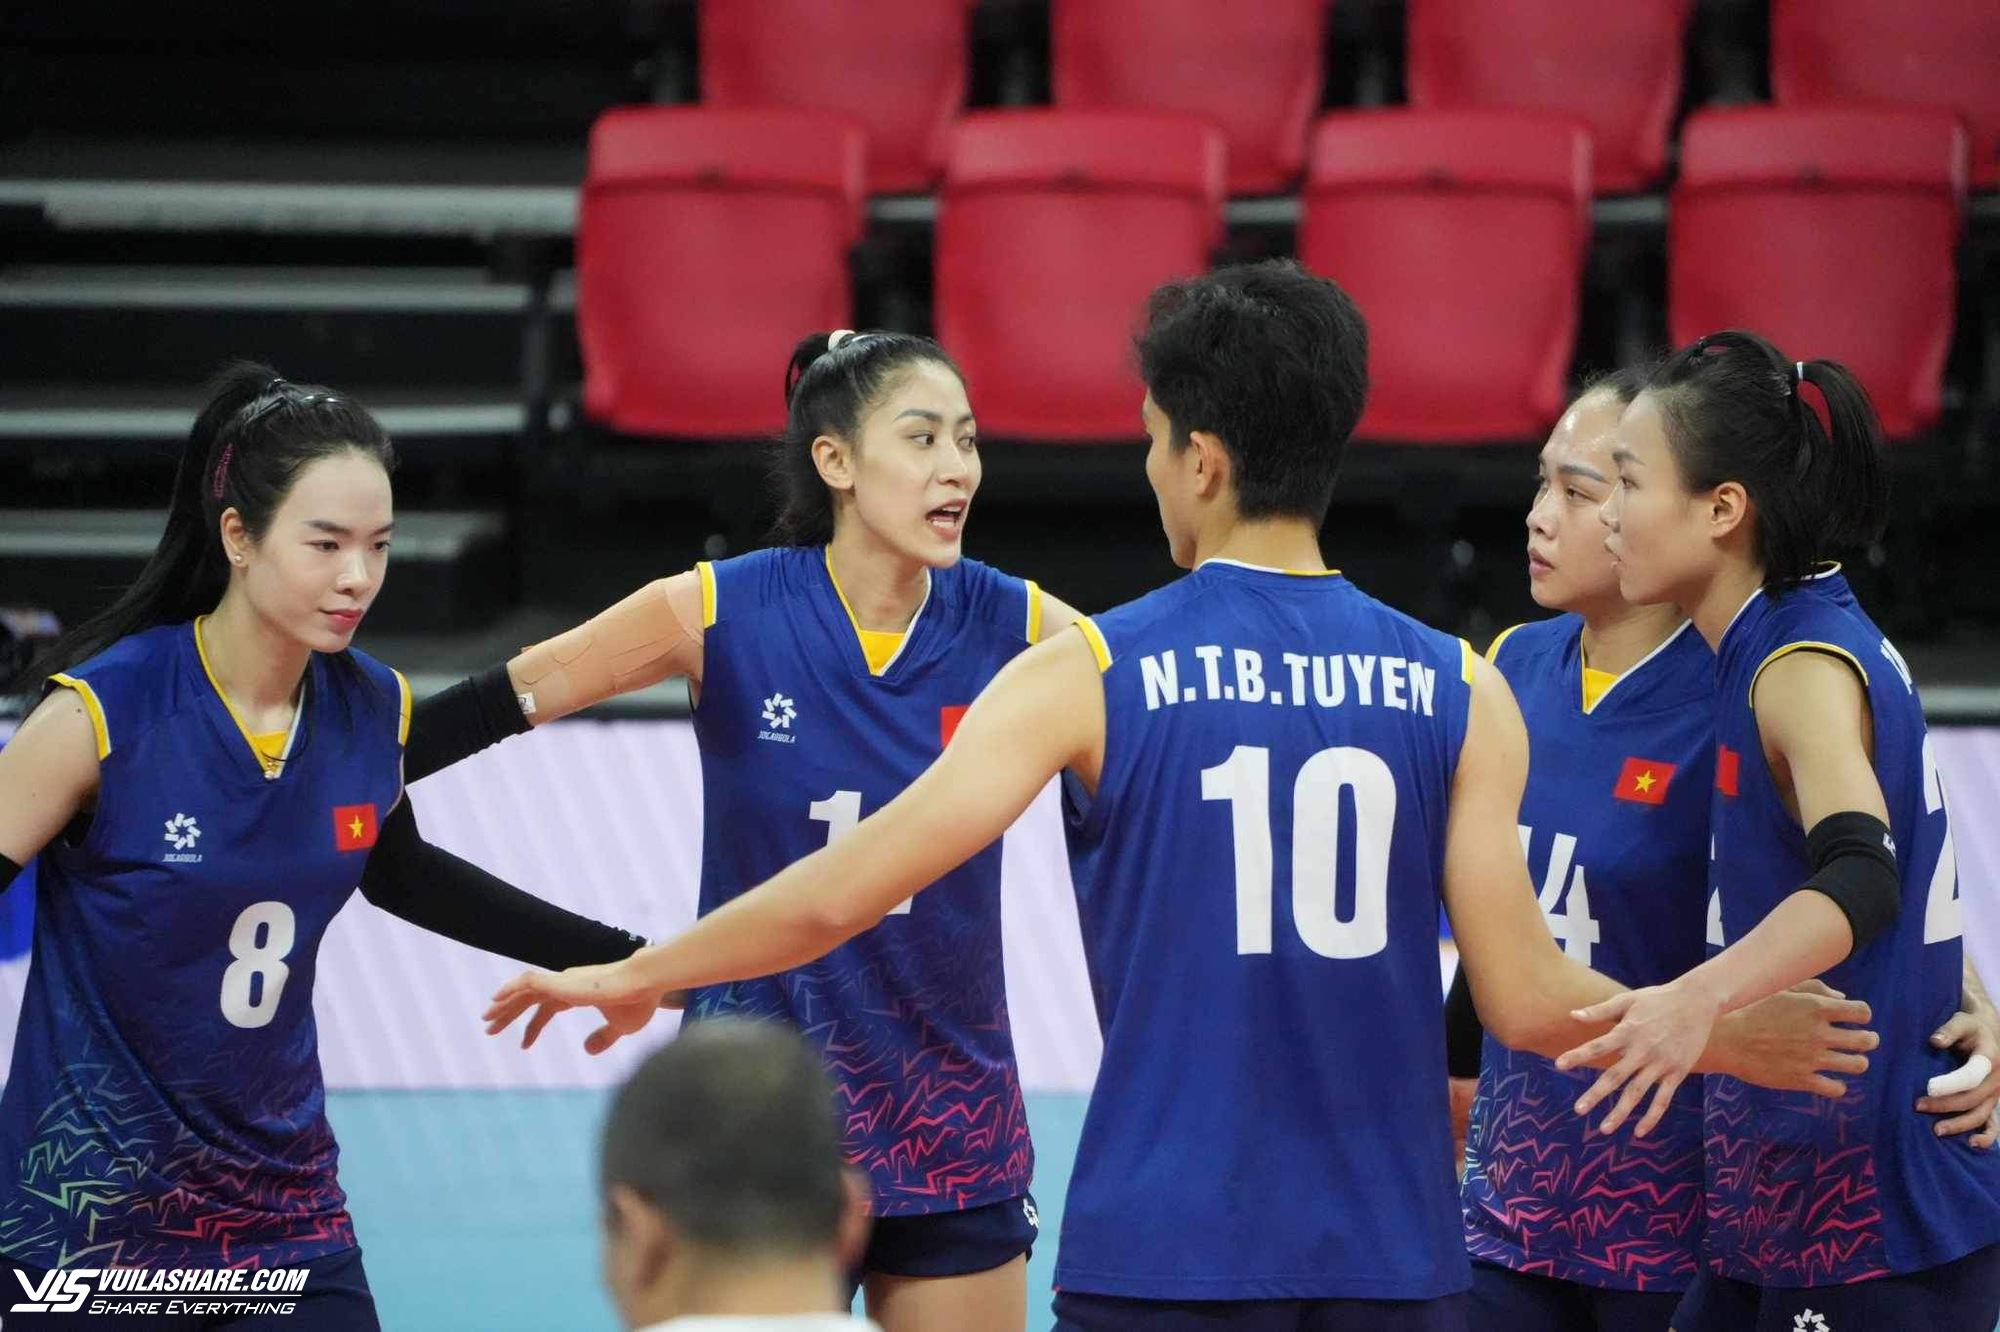 Nóng: Bích Tuyền chói sáng đưa đội tuyển Việt Nam vào chung kết bóng chuyền nữ châu Á- Ảnh 3.